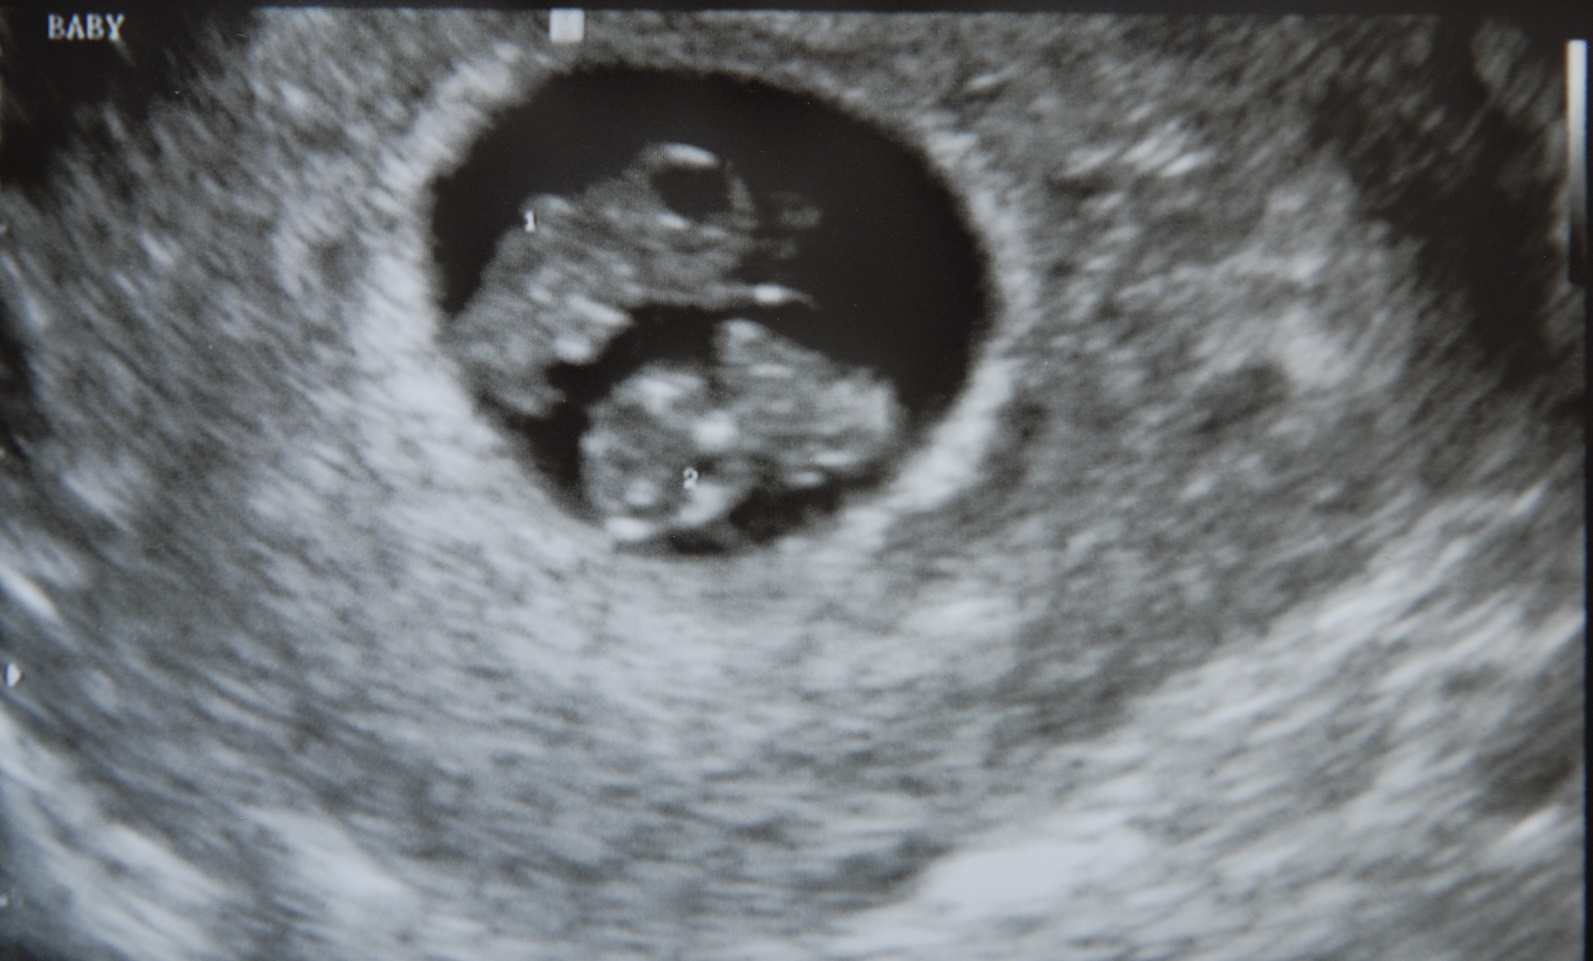 Узи на 4 неделе беременности фото двойня